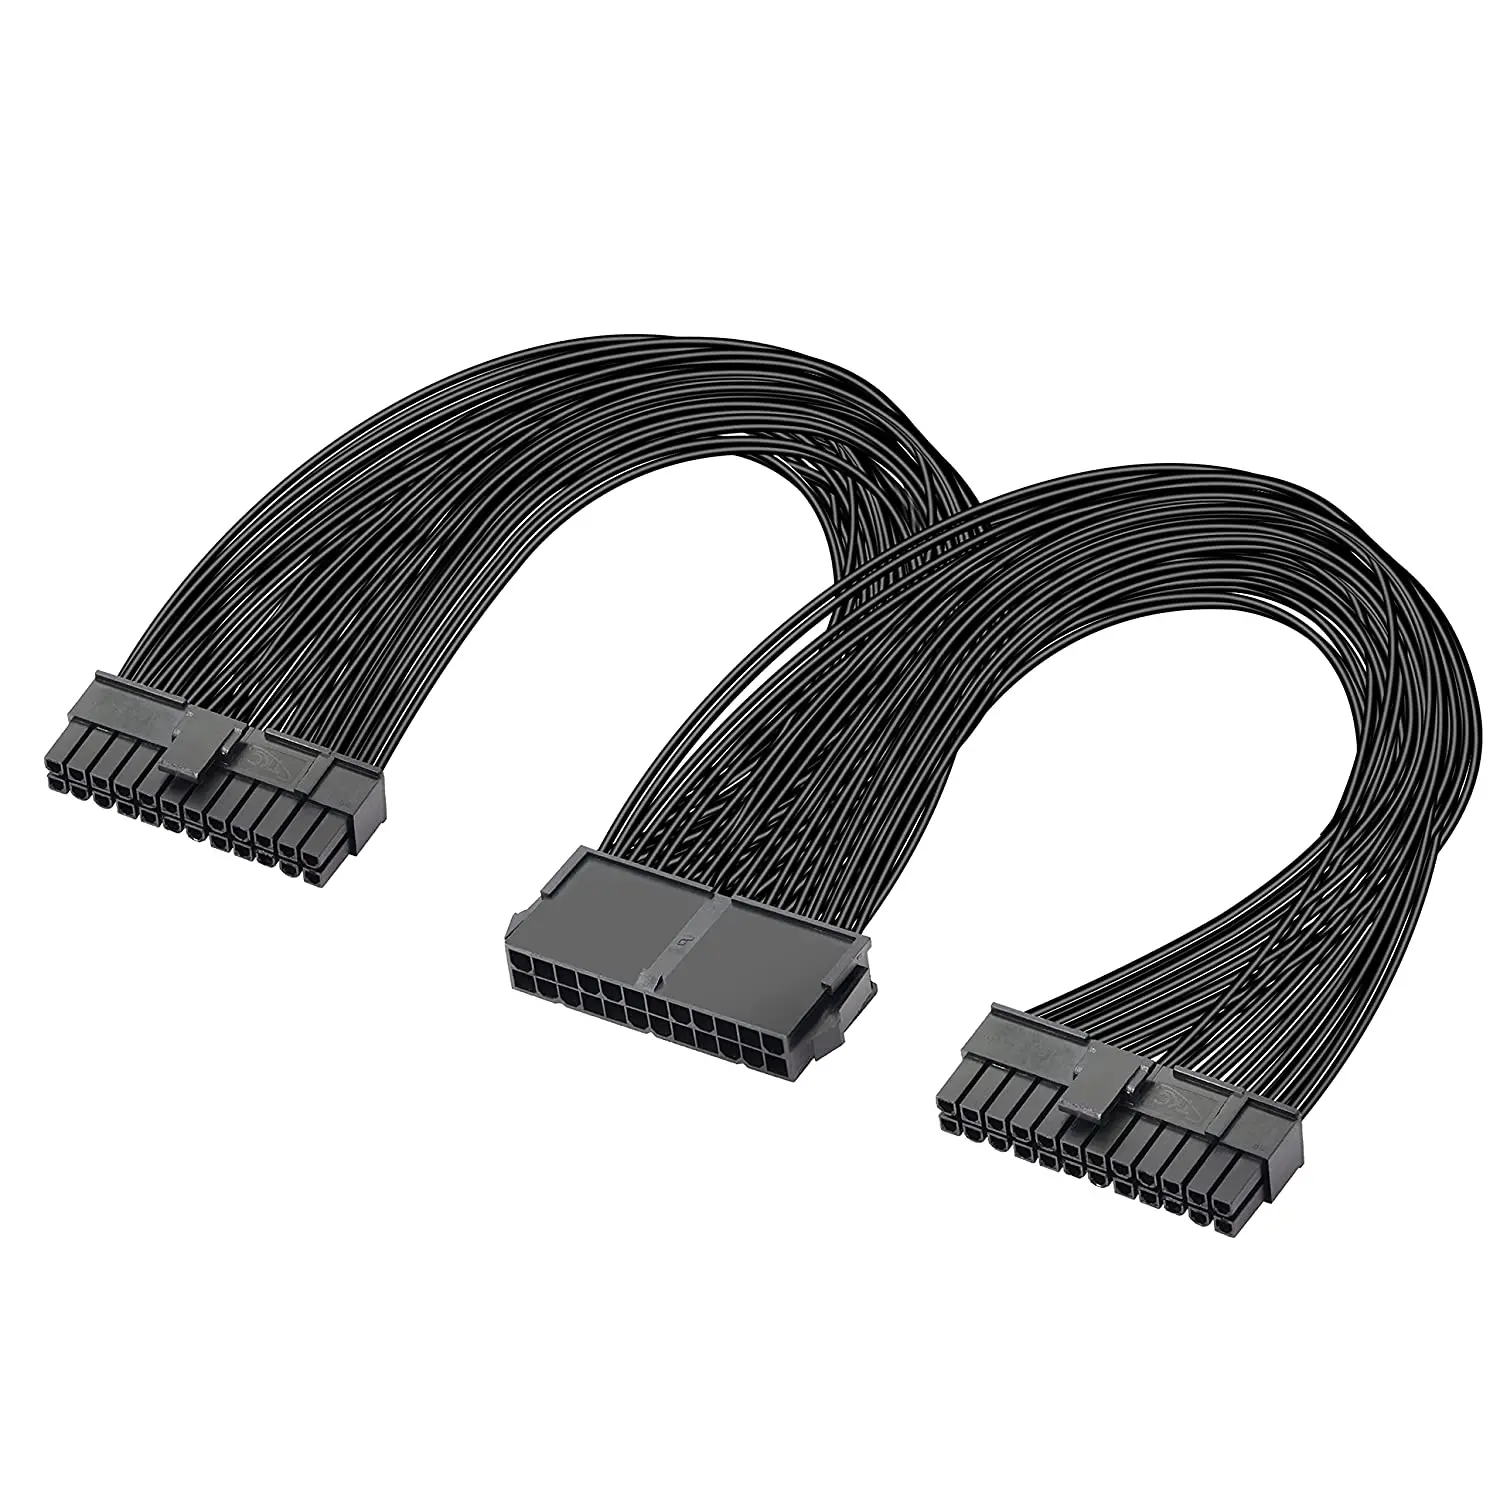 Dual Netzteil netzteil 24 pin ATX Motherboard Splitter Kabel ATX  Motherboard Verlängerung Kabel NETZTEIL Weiblichen zu Männlichen Y Adapter  kabel - AliExpress